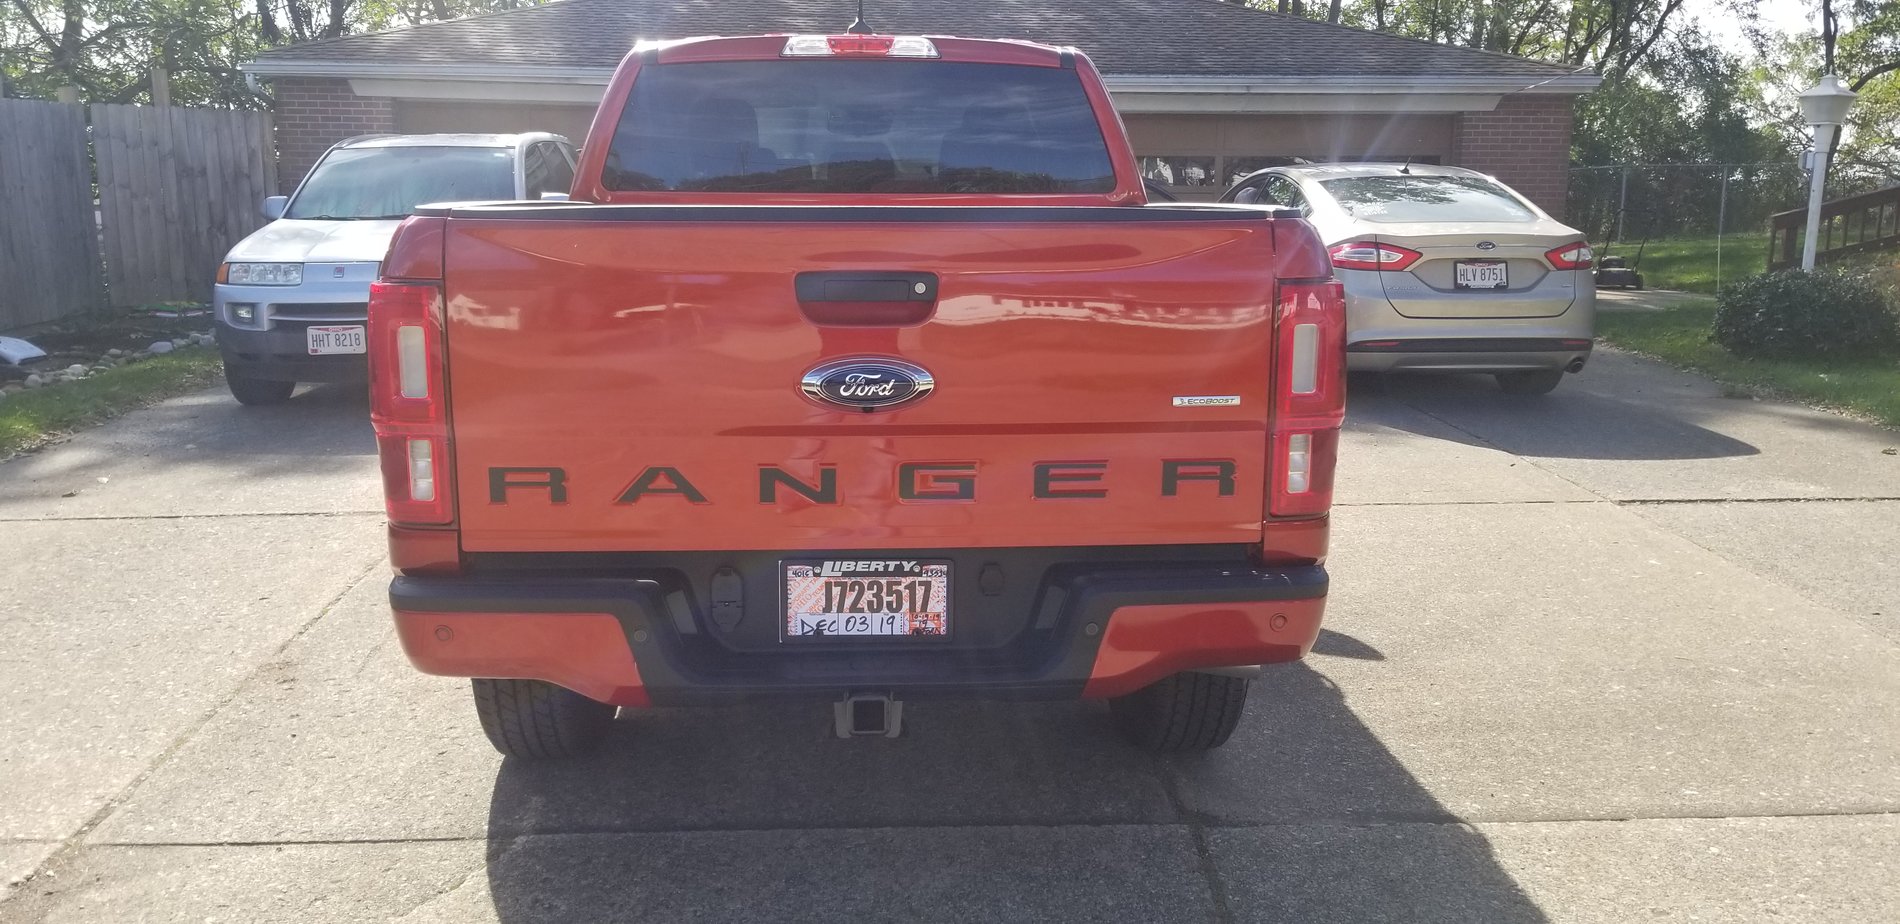 Ford Ranger HOT PEPPER RED Ranger Club Thread 20191019_122346